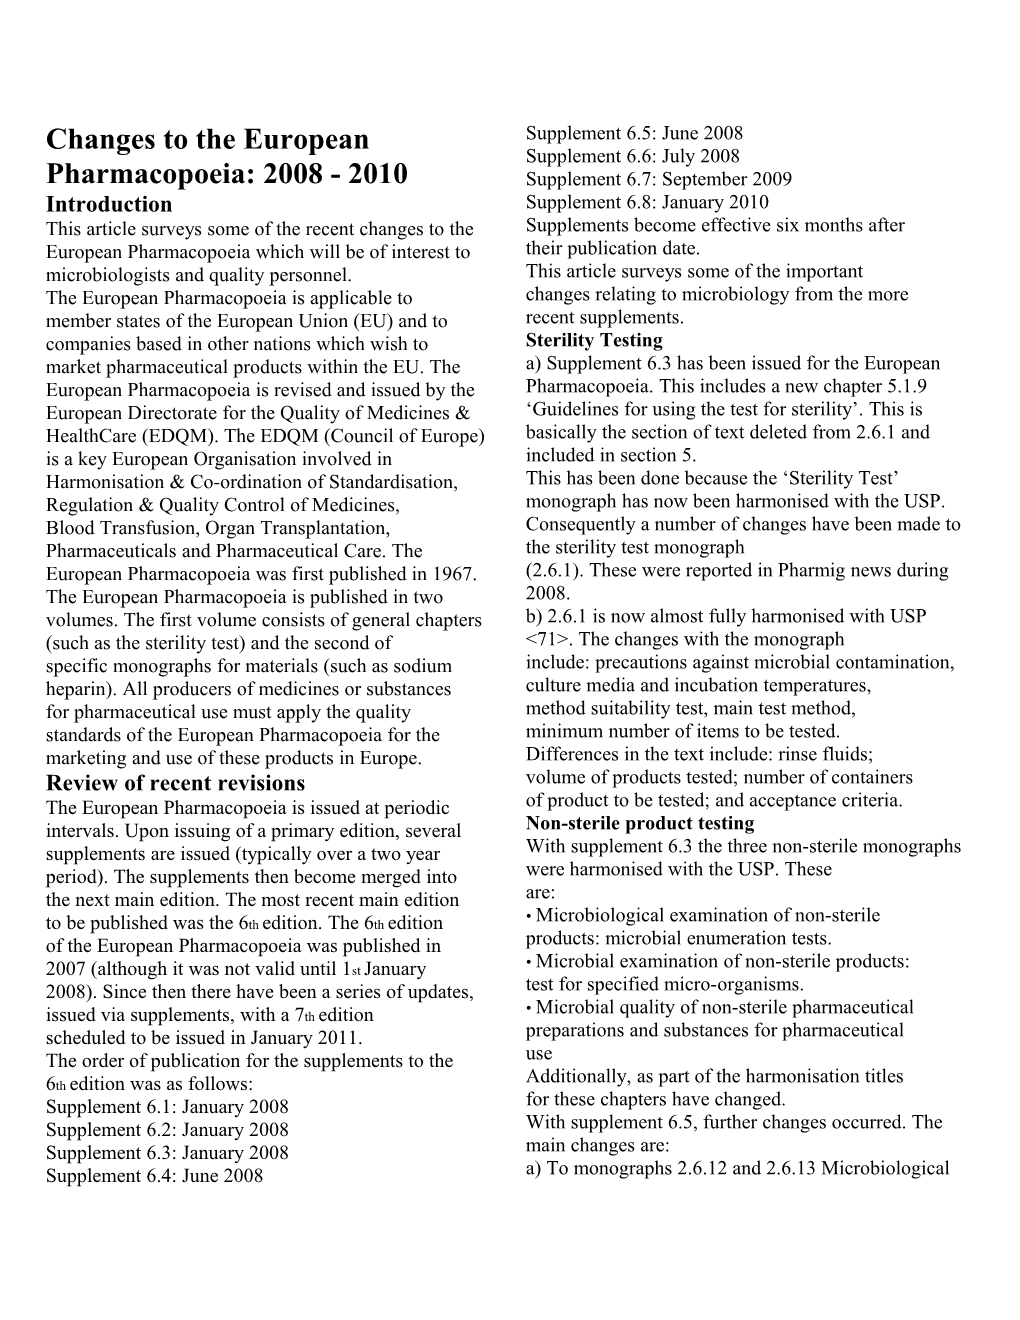 Changes to the European Pharmacopoeia: 2008 - 2010